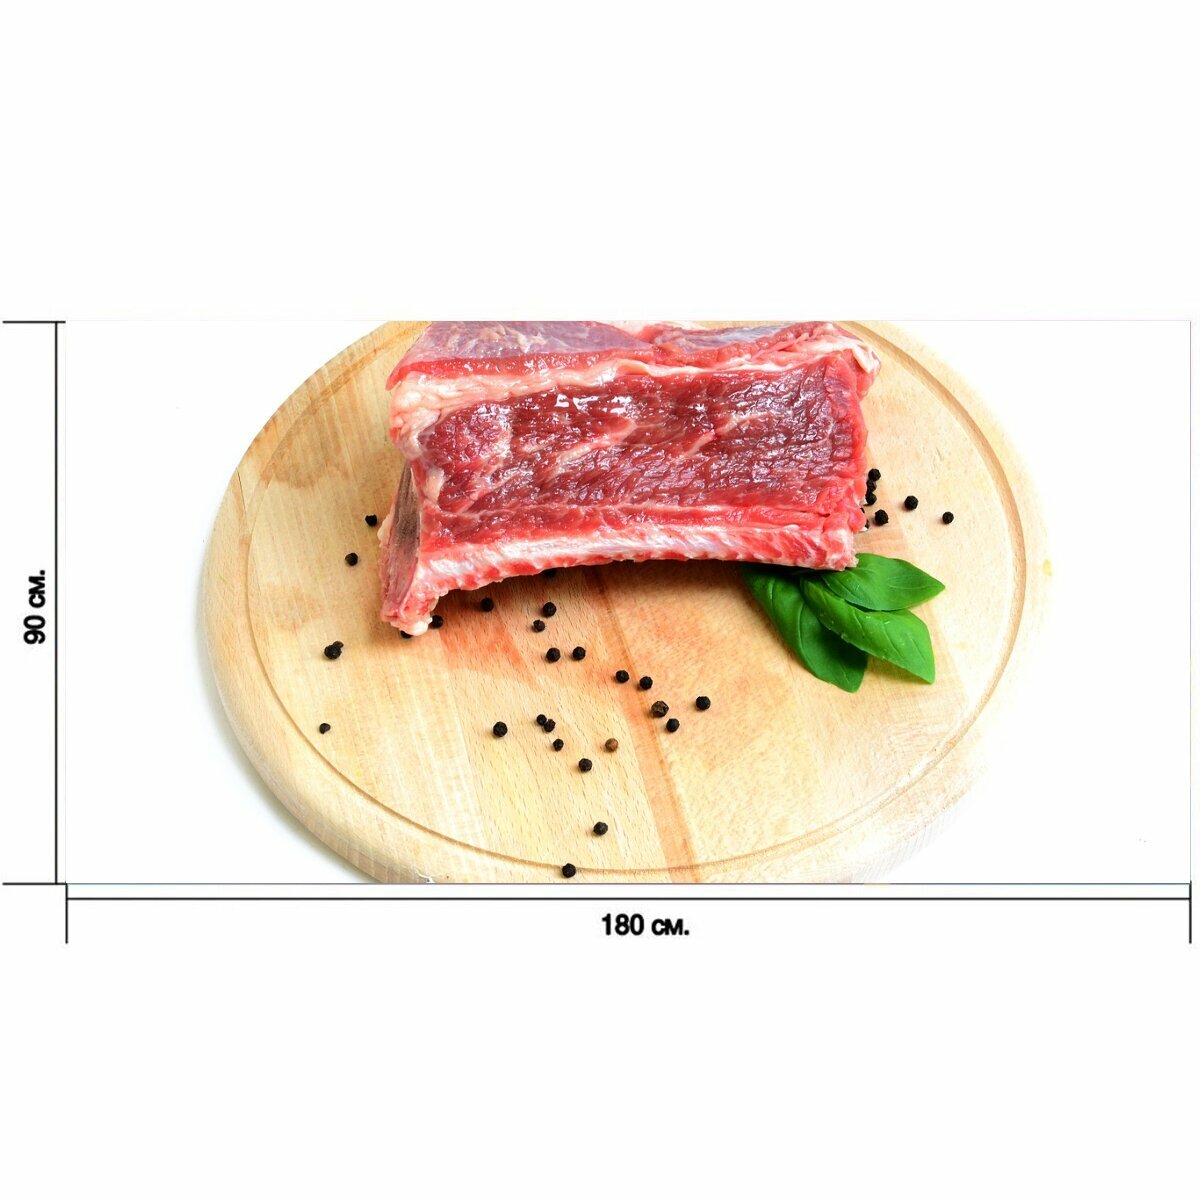 Большой постер "Ребро, говядина, мясо" 180 x 90 см. для интерьера